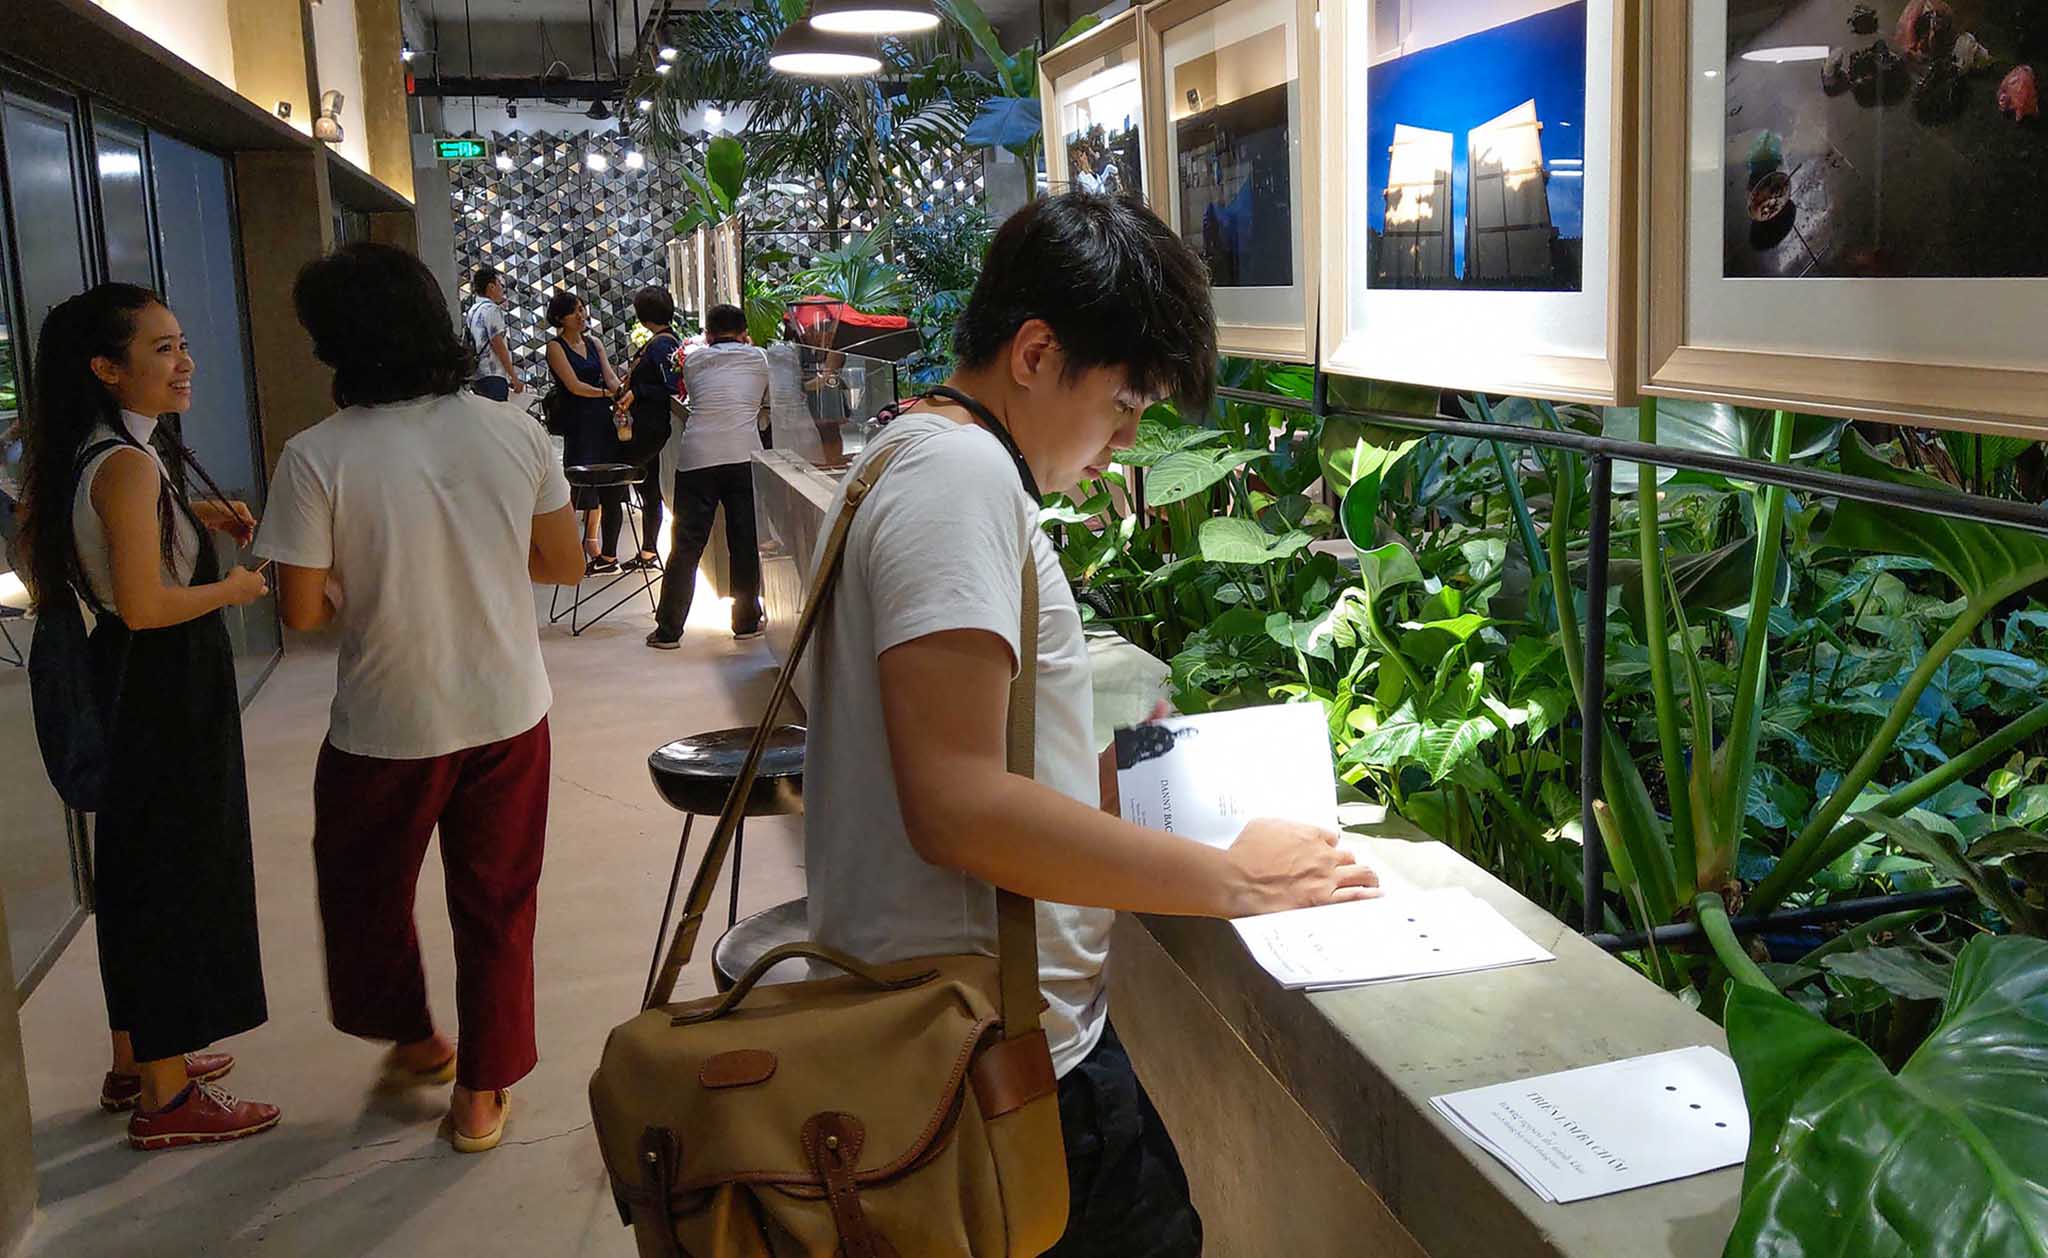 Mời xem triển lãm ảnh BA CHẤM ( ELLIPSIS) của 4 nghệ sỹ hình ảnh tại Sài Gòn  08/7-18/8 2018